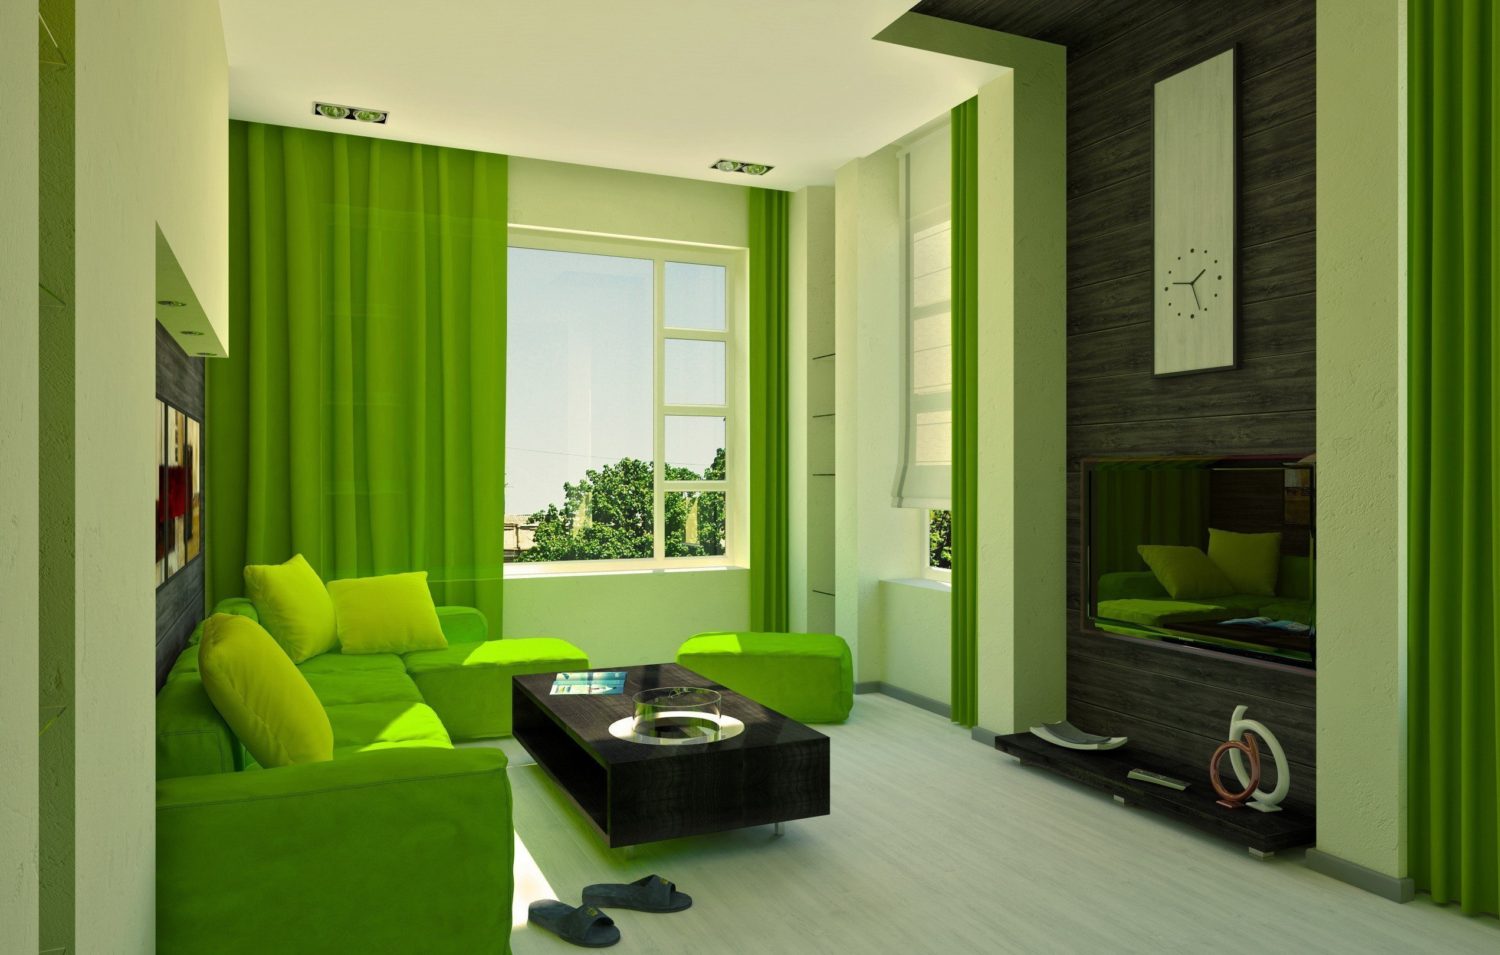 sala d'estar a la foto interior de color verd